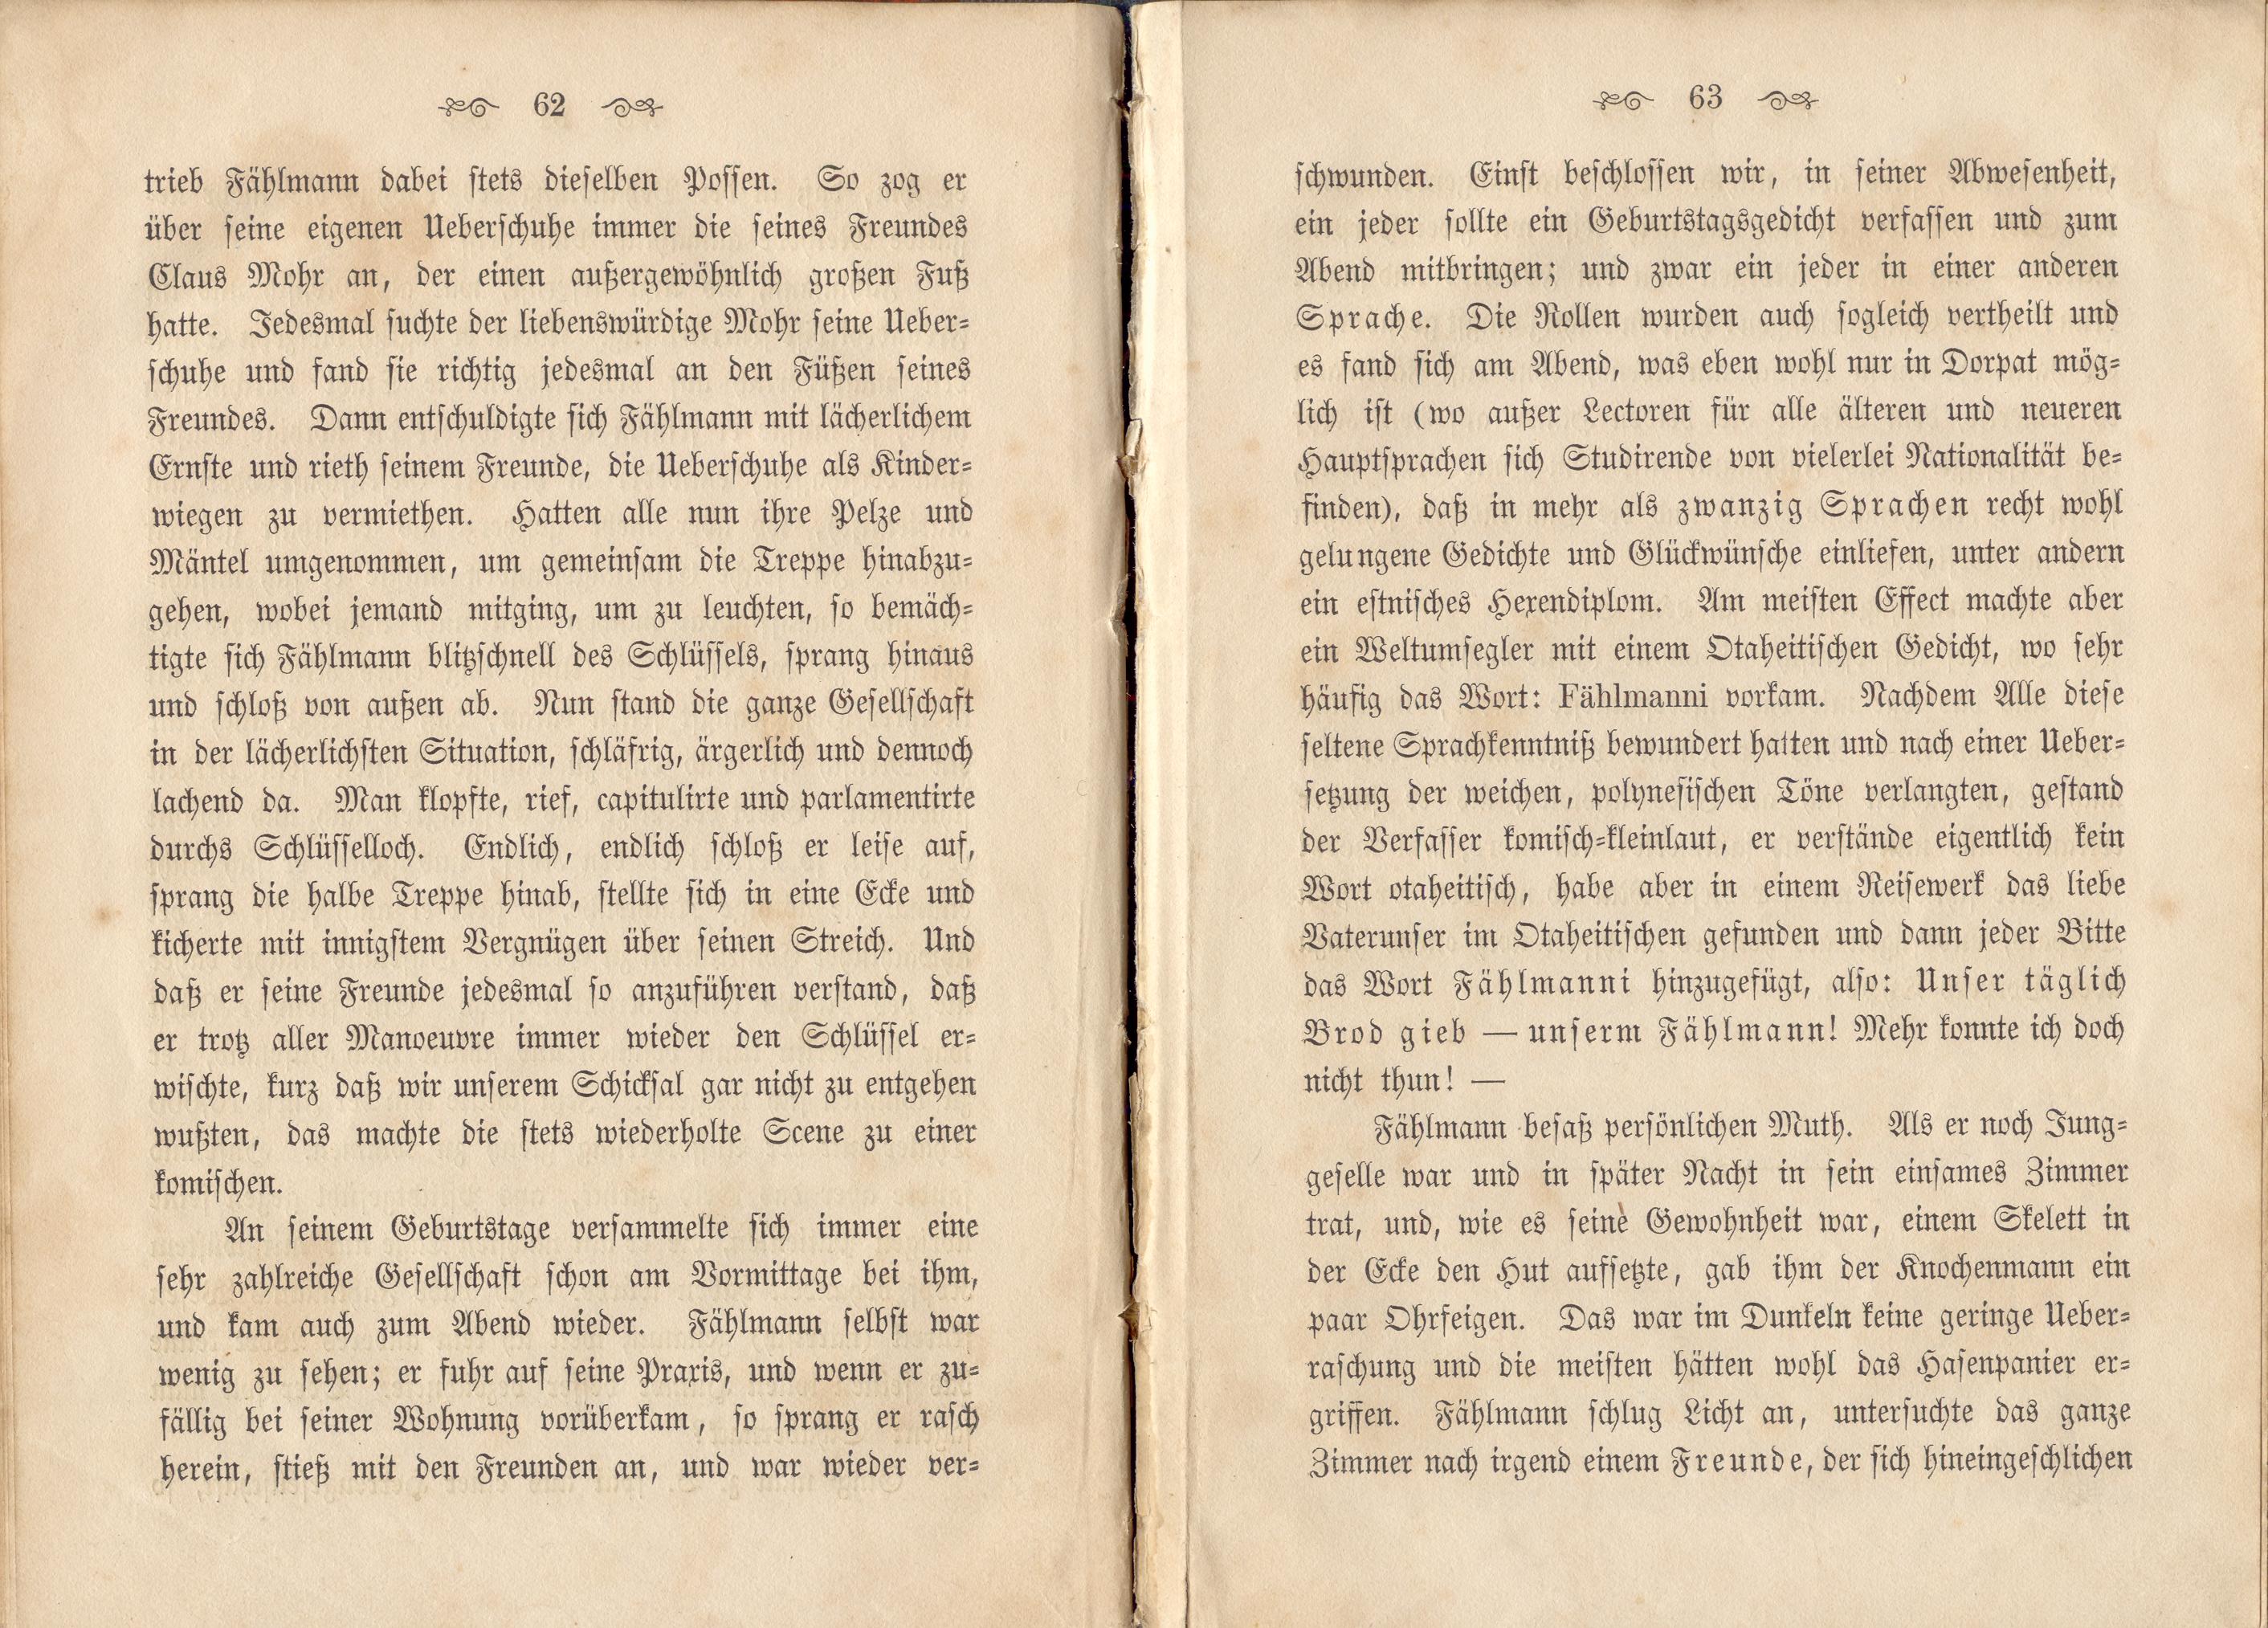 Dorpats Grössen und Typen (1868) | 34. (62-63) Main body of text